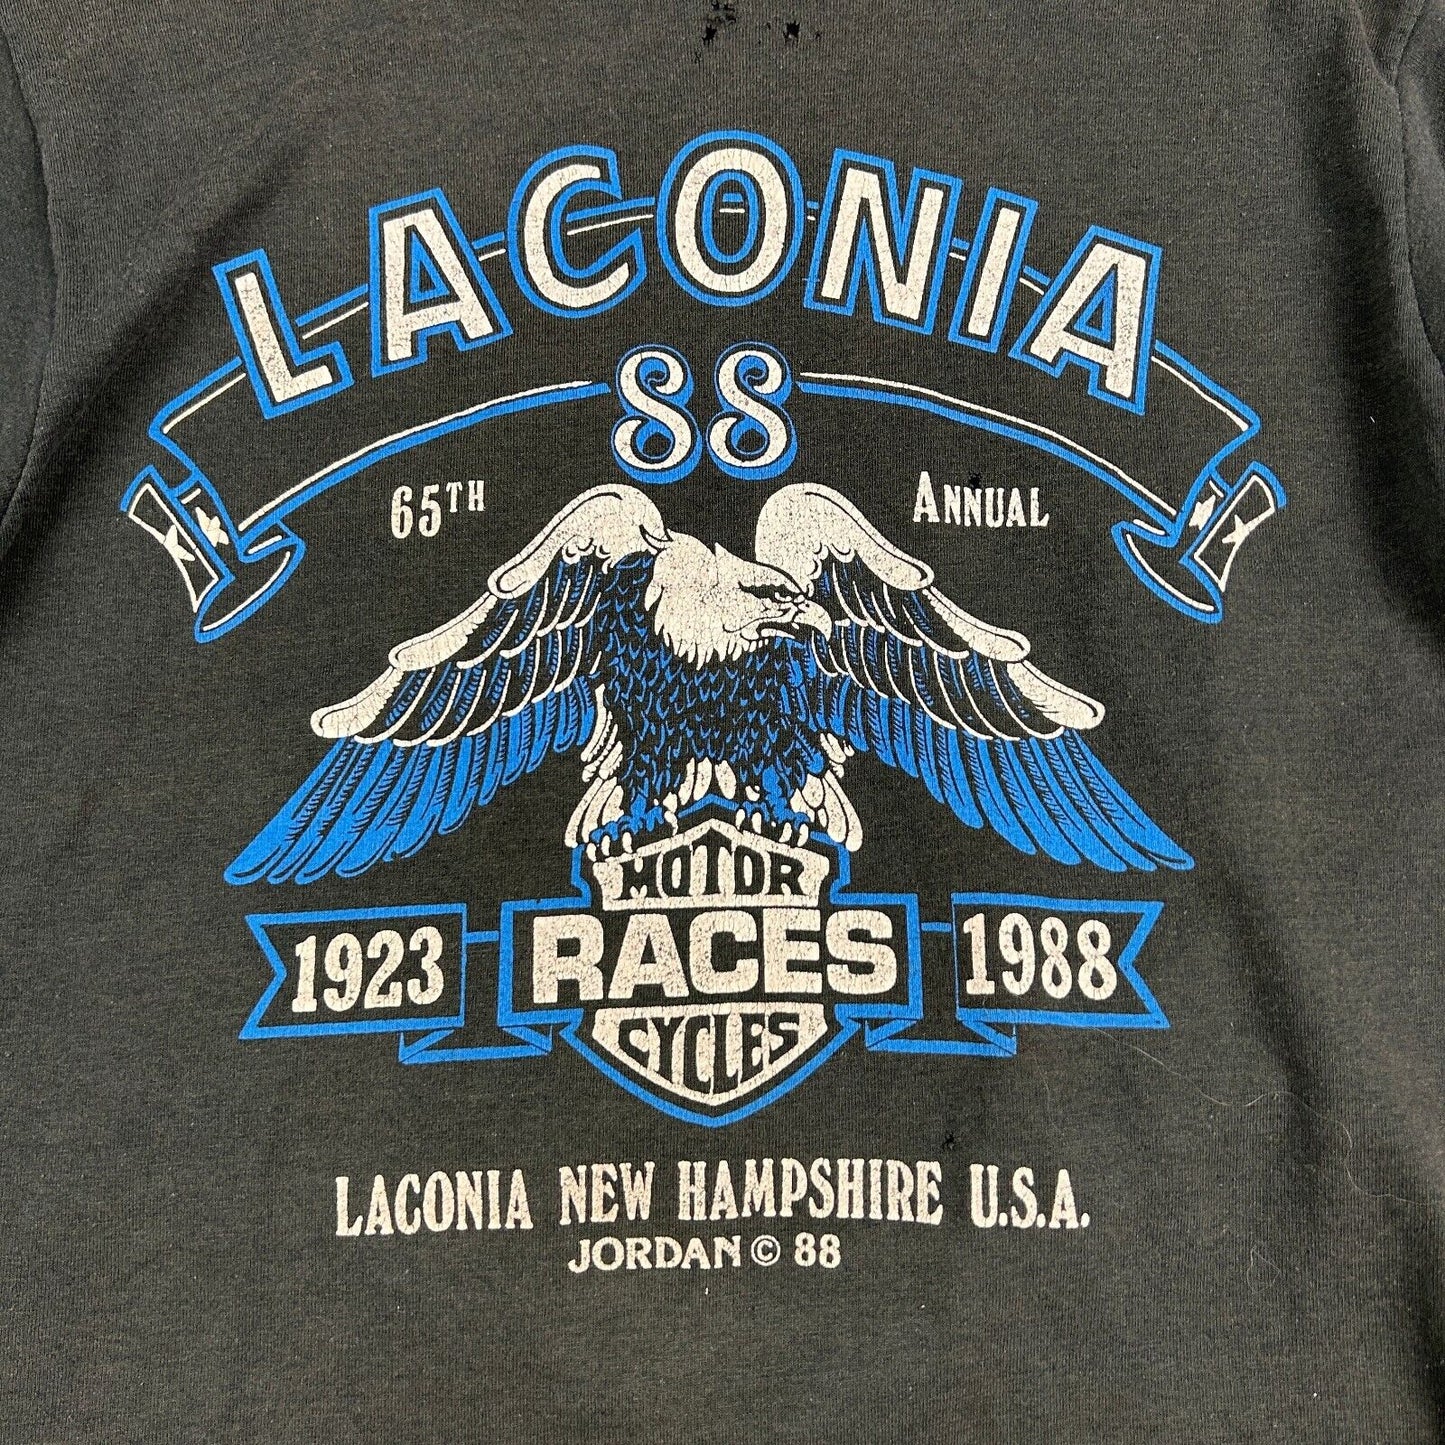 VINTAGE 1988 | Laconia Motor Cycle Races Biker Black T-Shirt sz S-M Adult